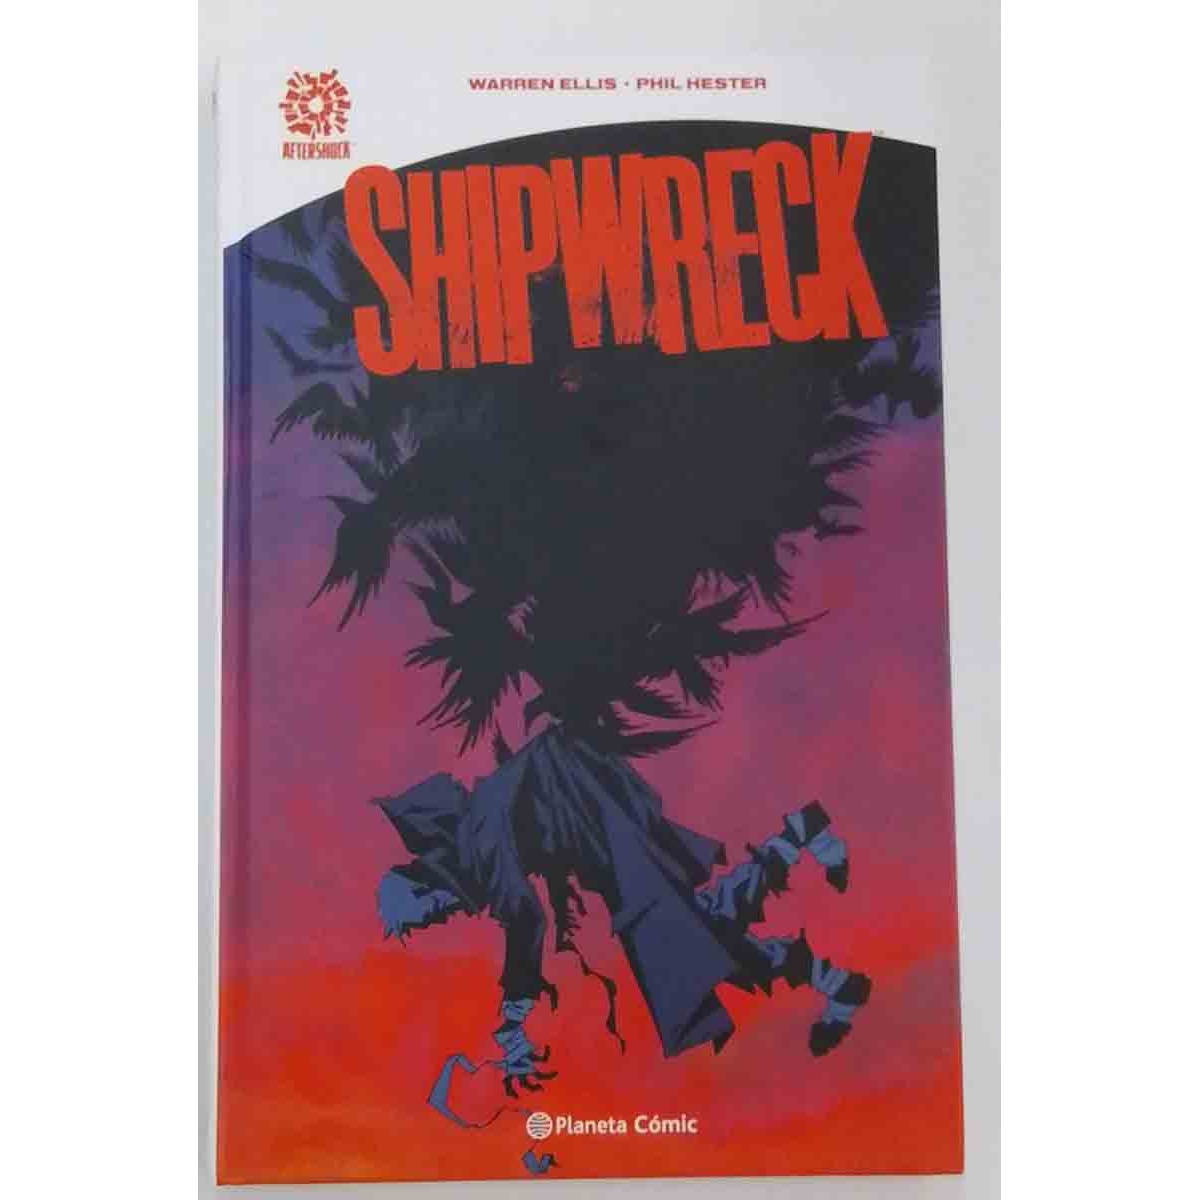 Shipwreck (Segunda Mano)